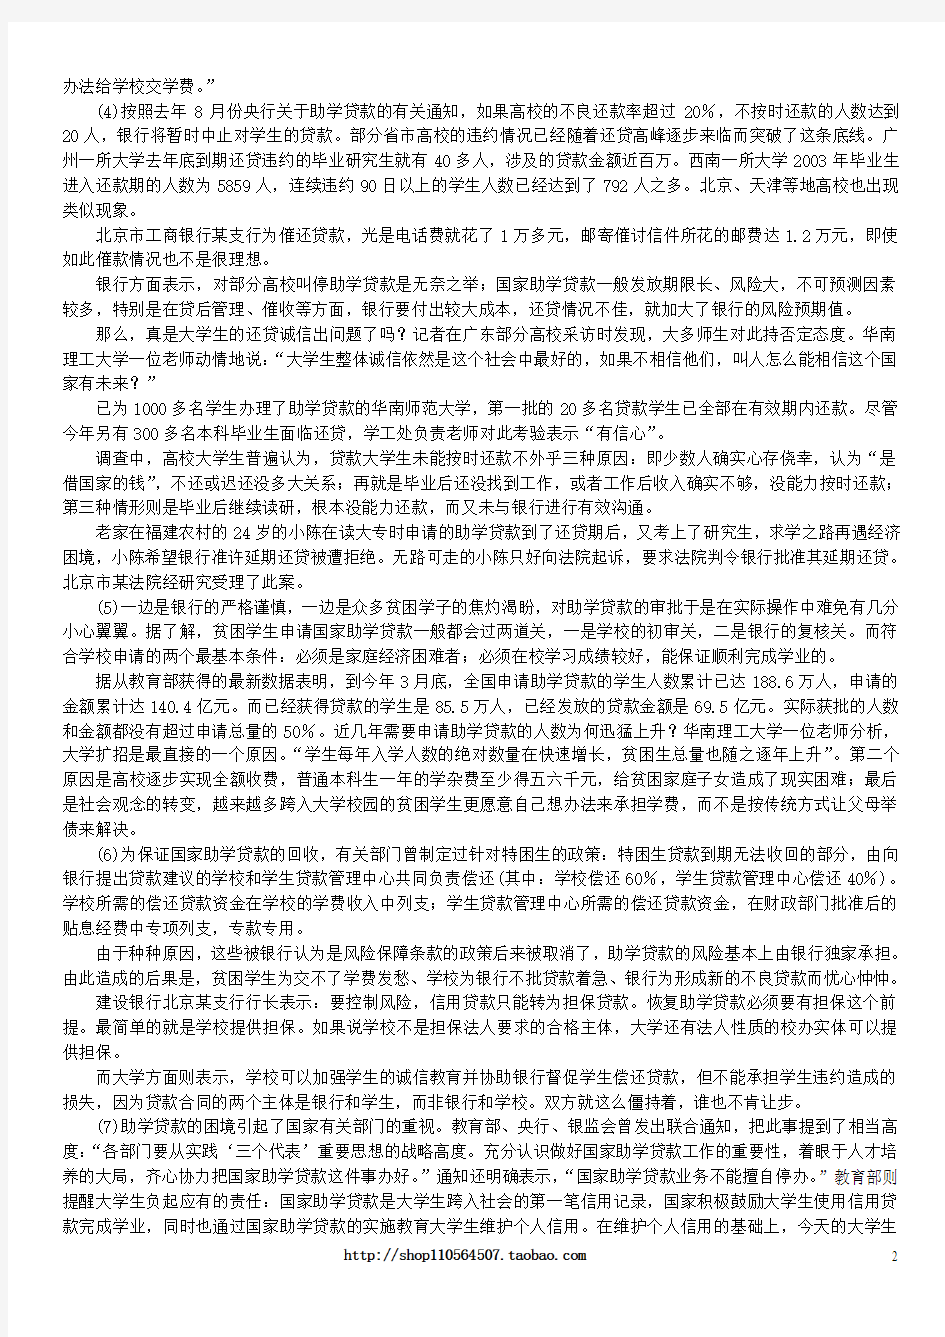 2004年下半年广东省公务员录用考试《申论》真题及标准答案